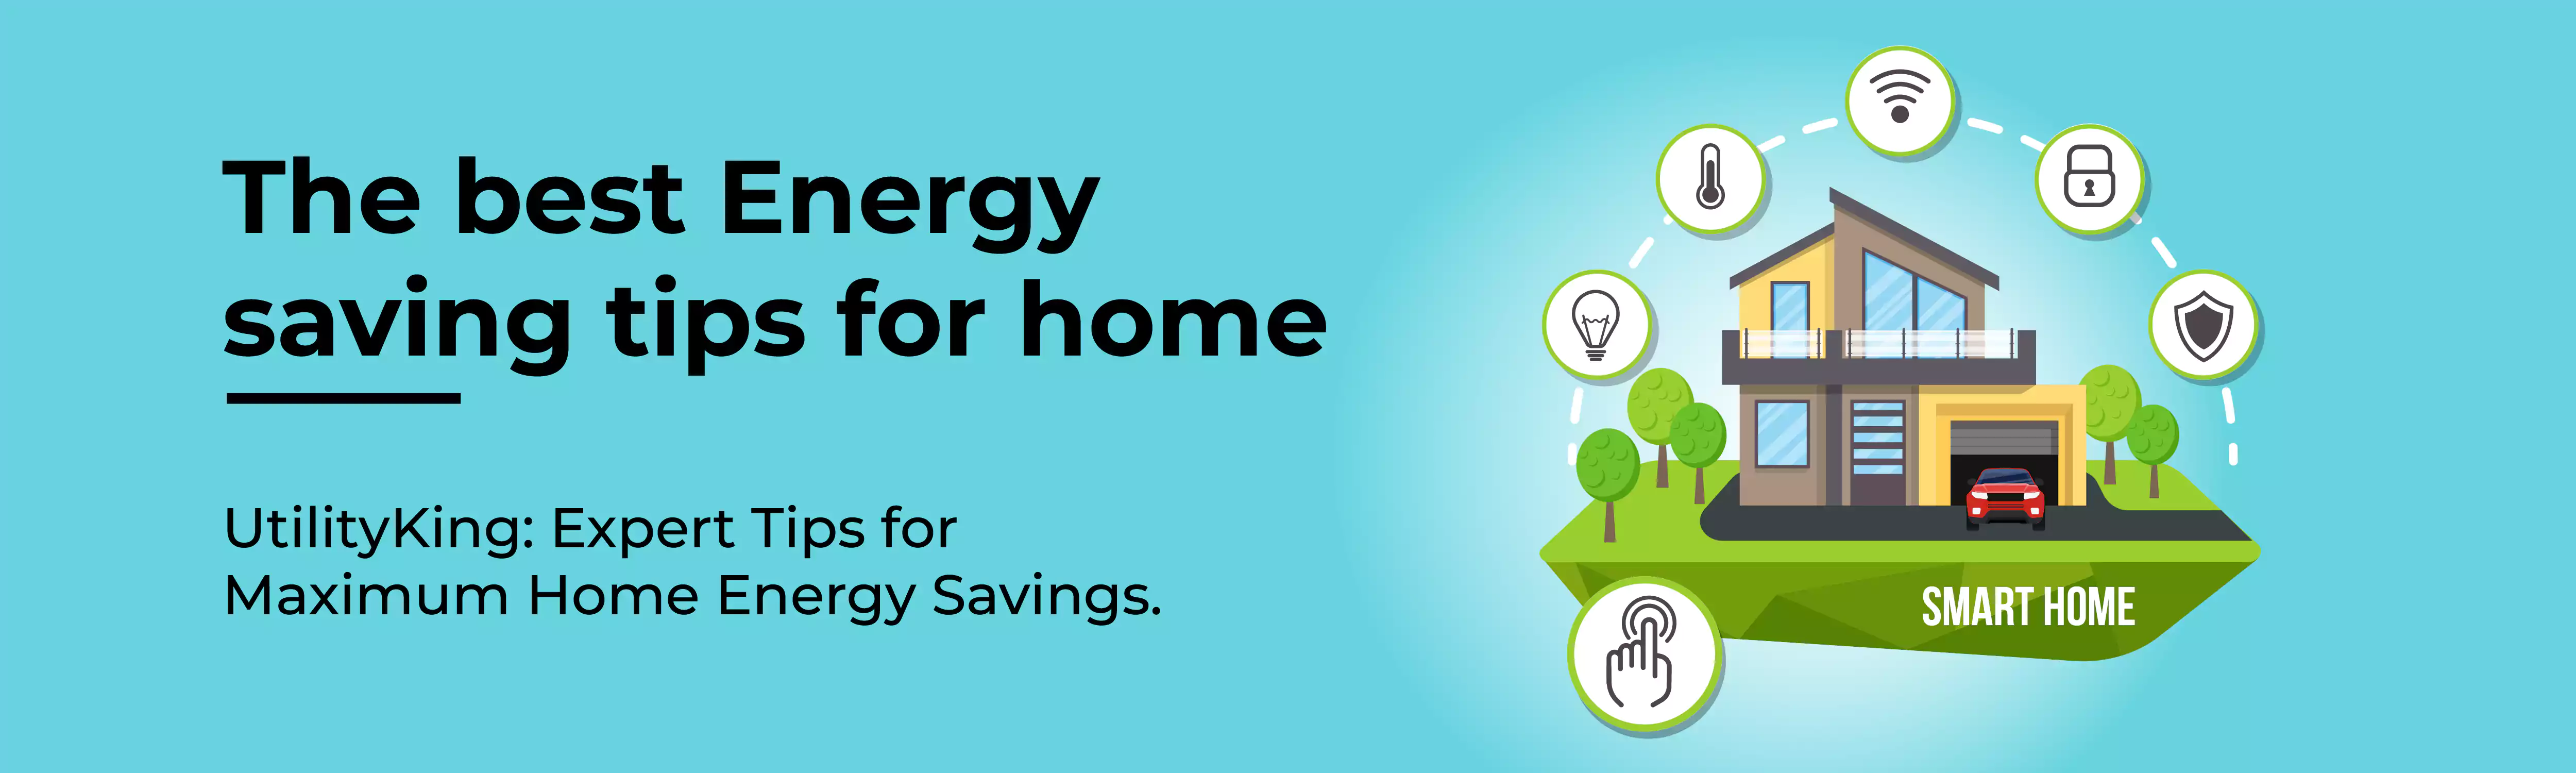 energy saving tips for home